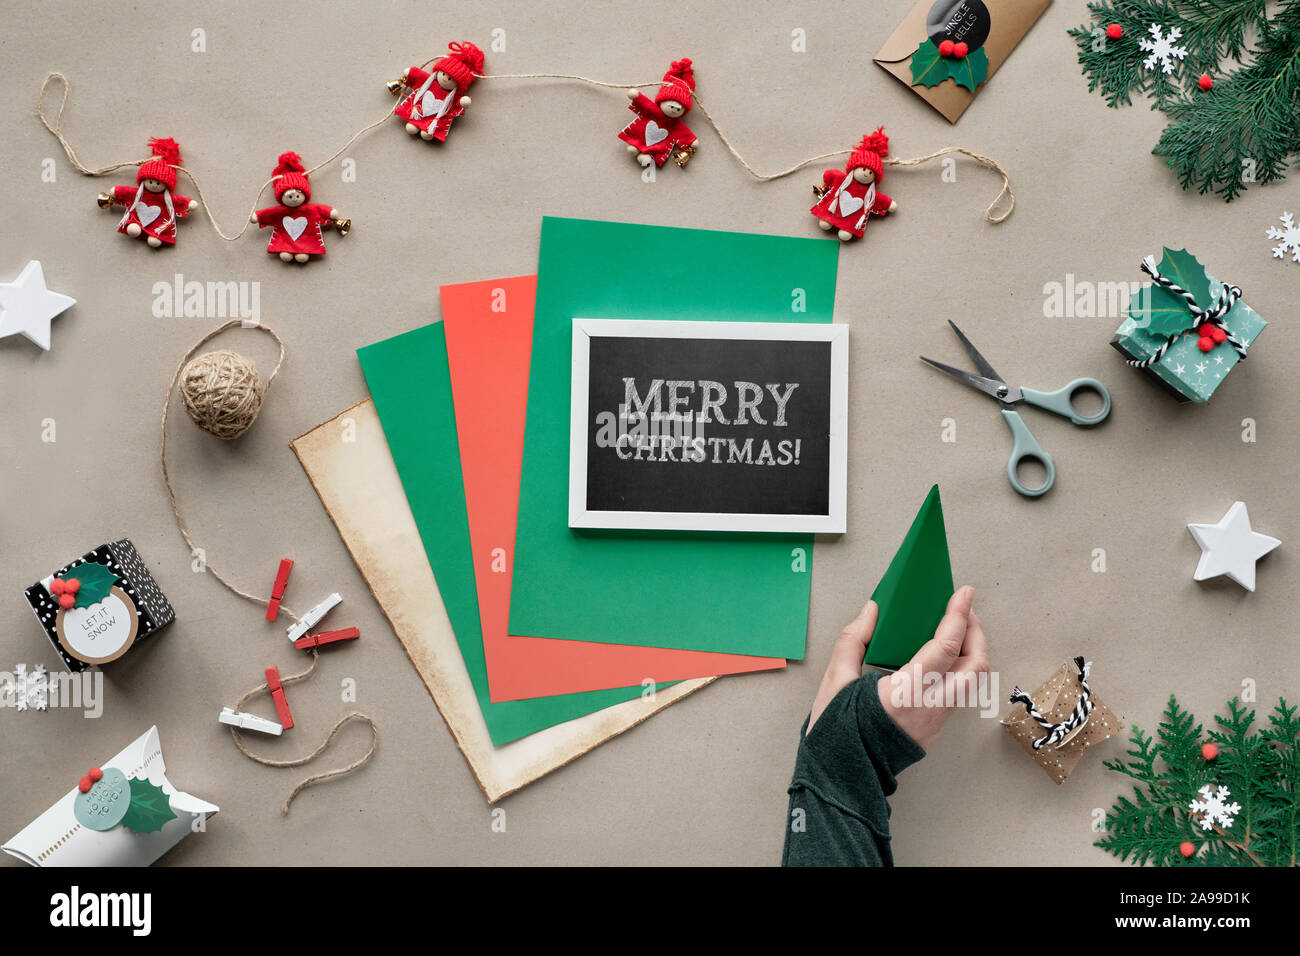 Buon Natale Zero.Waste At Christmas Immagini E Fotos Stock Alamy